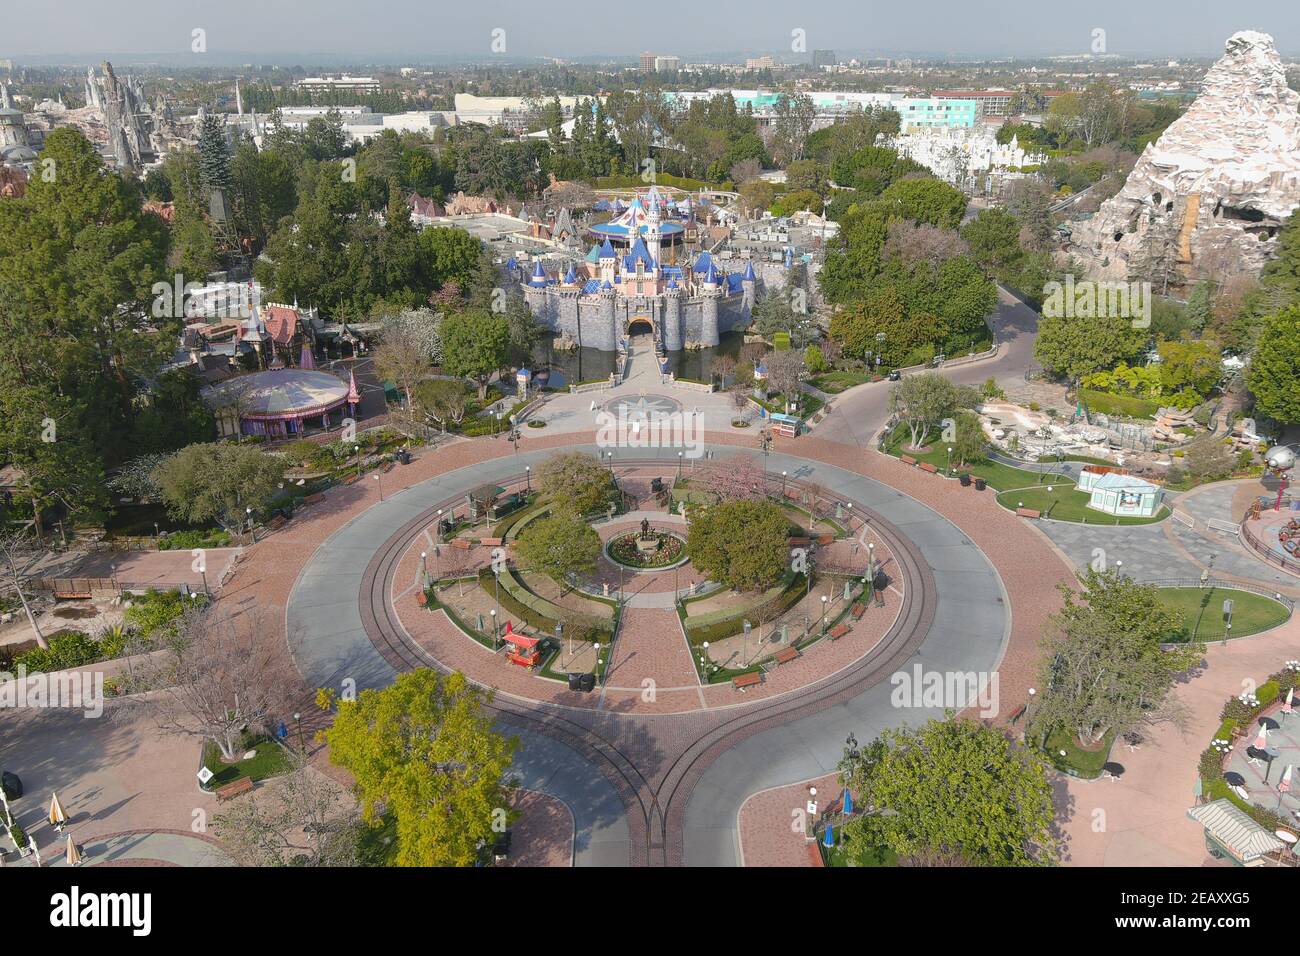 Une vue aérienne du Sleeping Beauty Castle à Disneyland Park, le mercredi 10 février 2021, à Anaheim, Calif. Banque D'Images